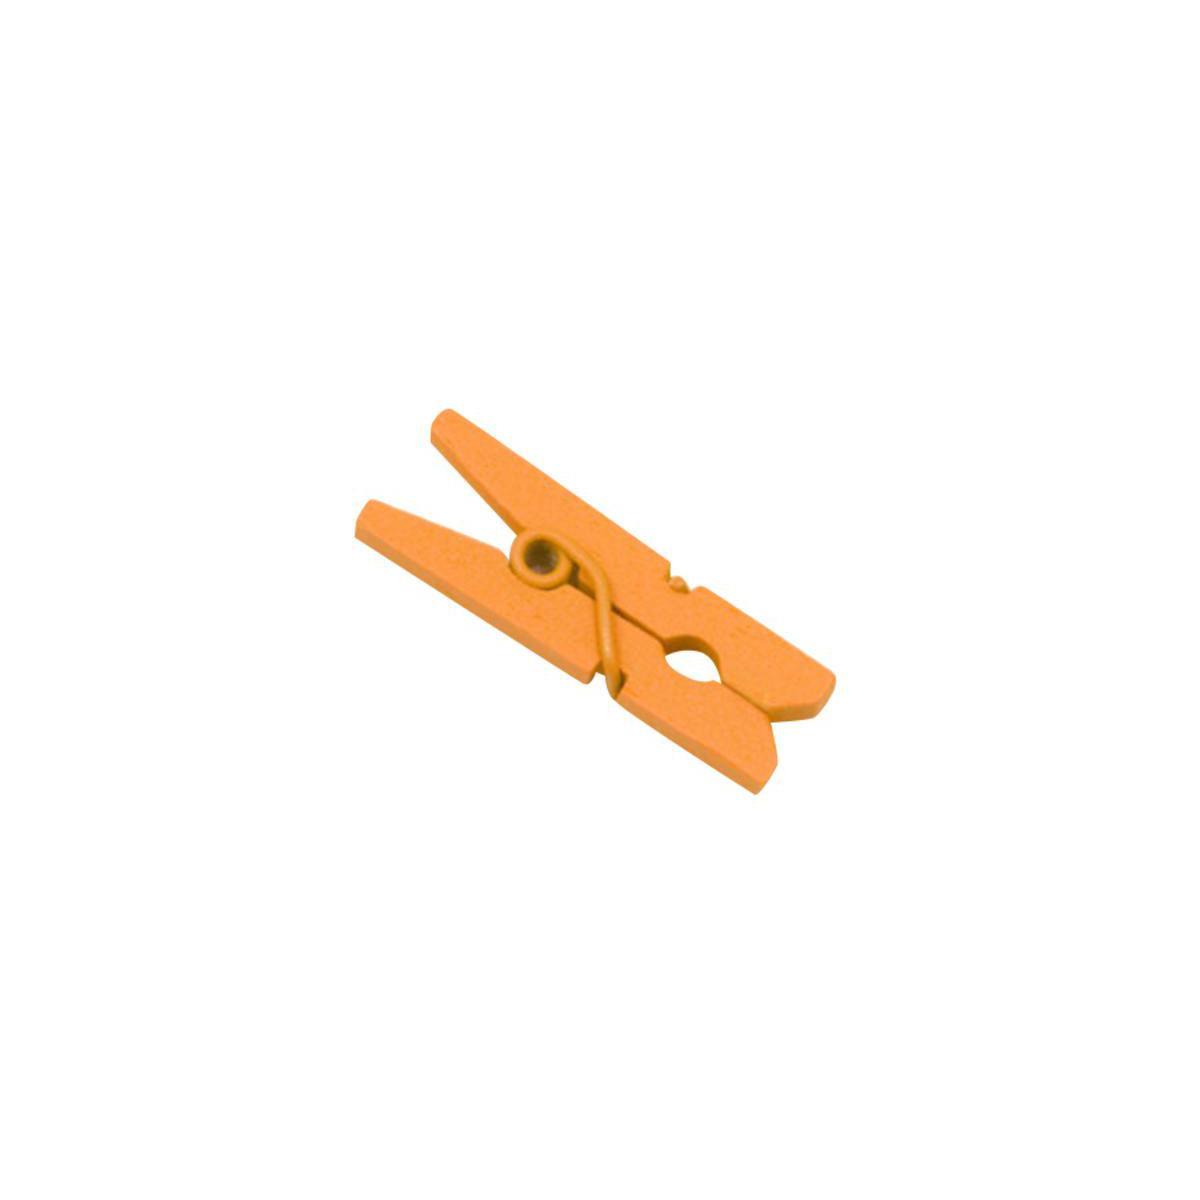 pince a linge en bois (sachet de 10 pieces) orange